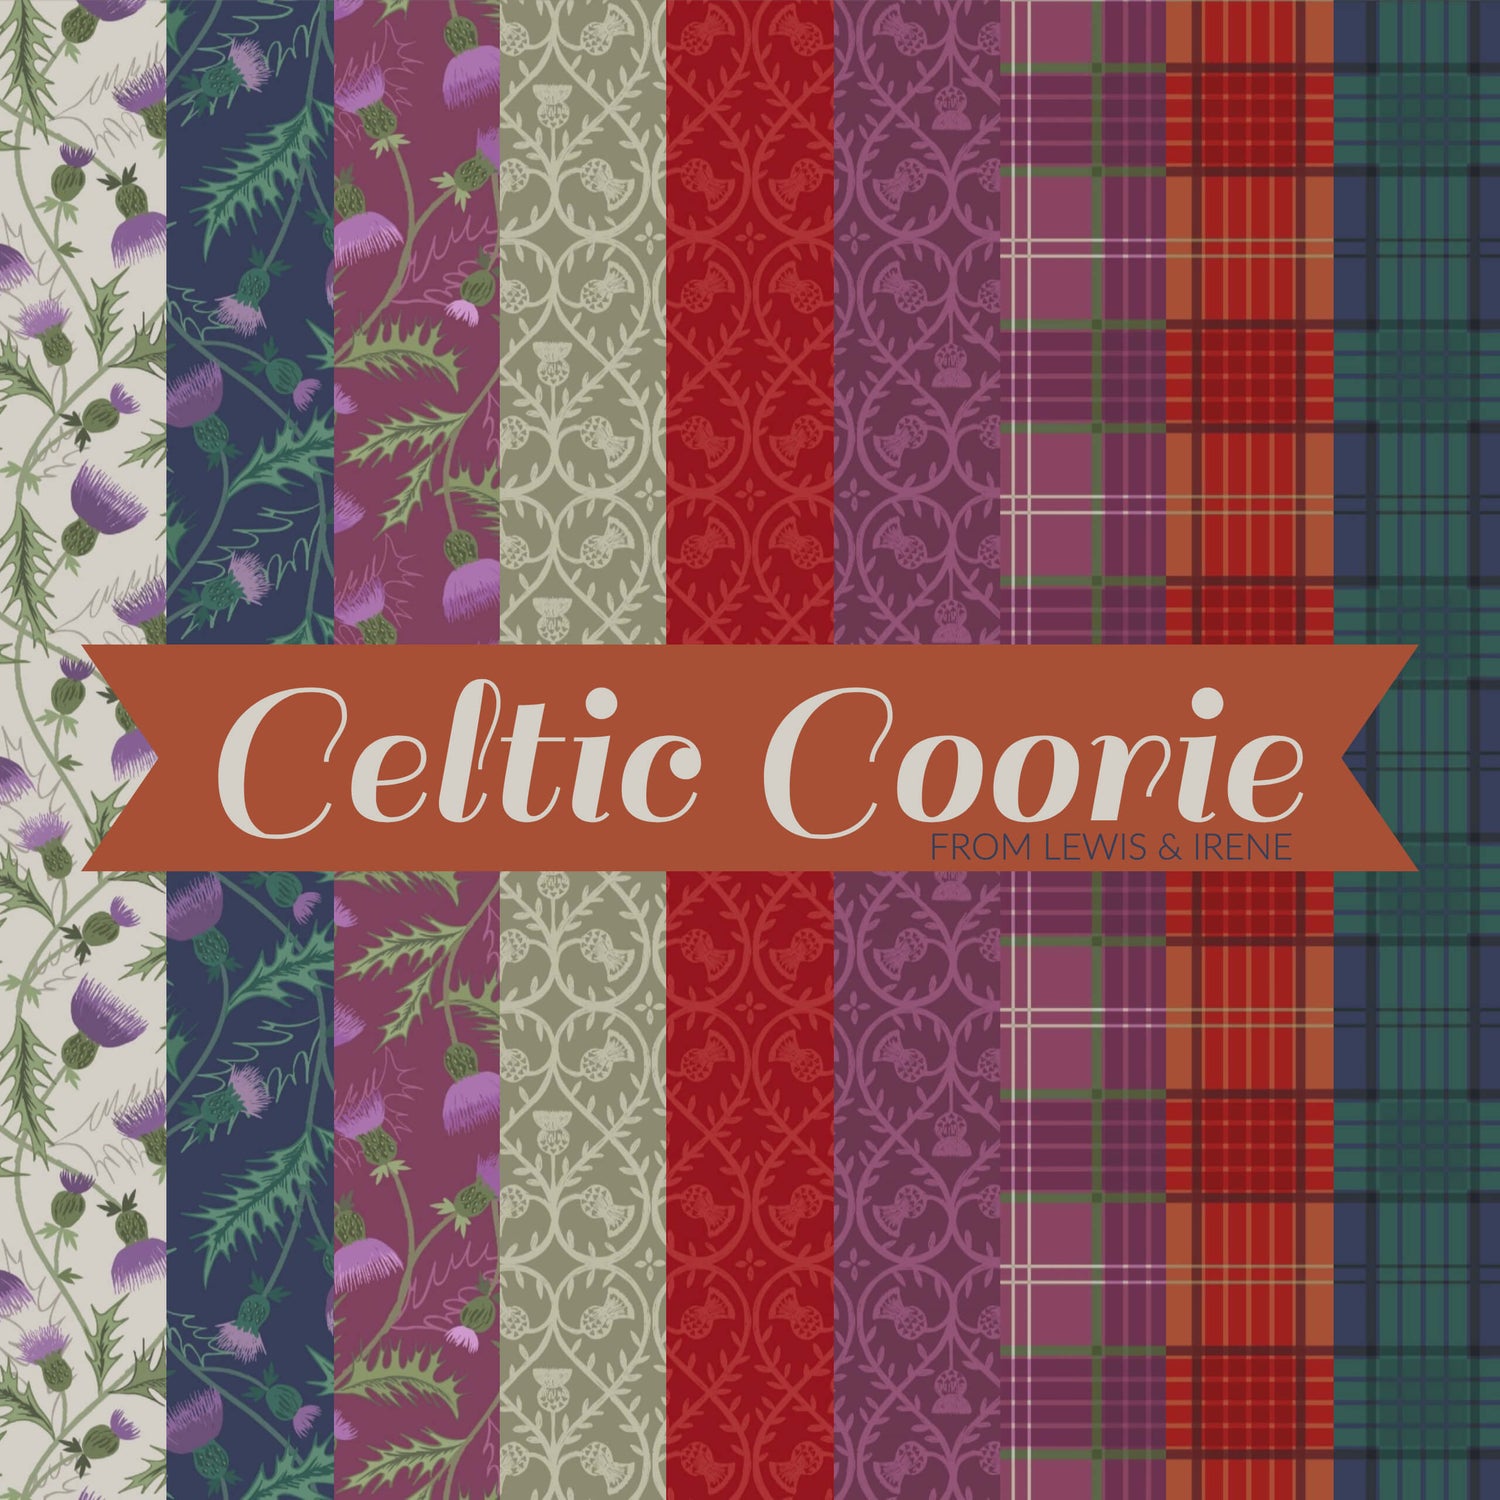 Celtic Coorie